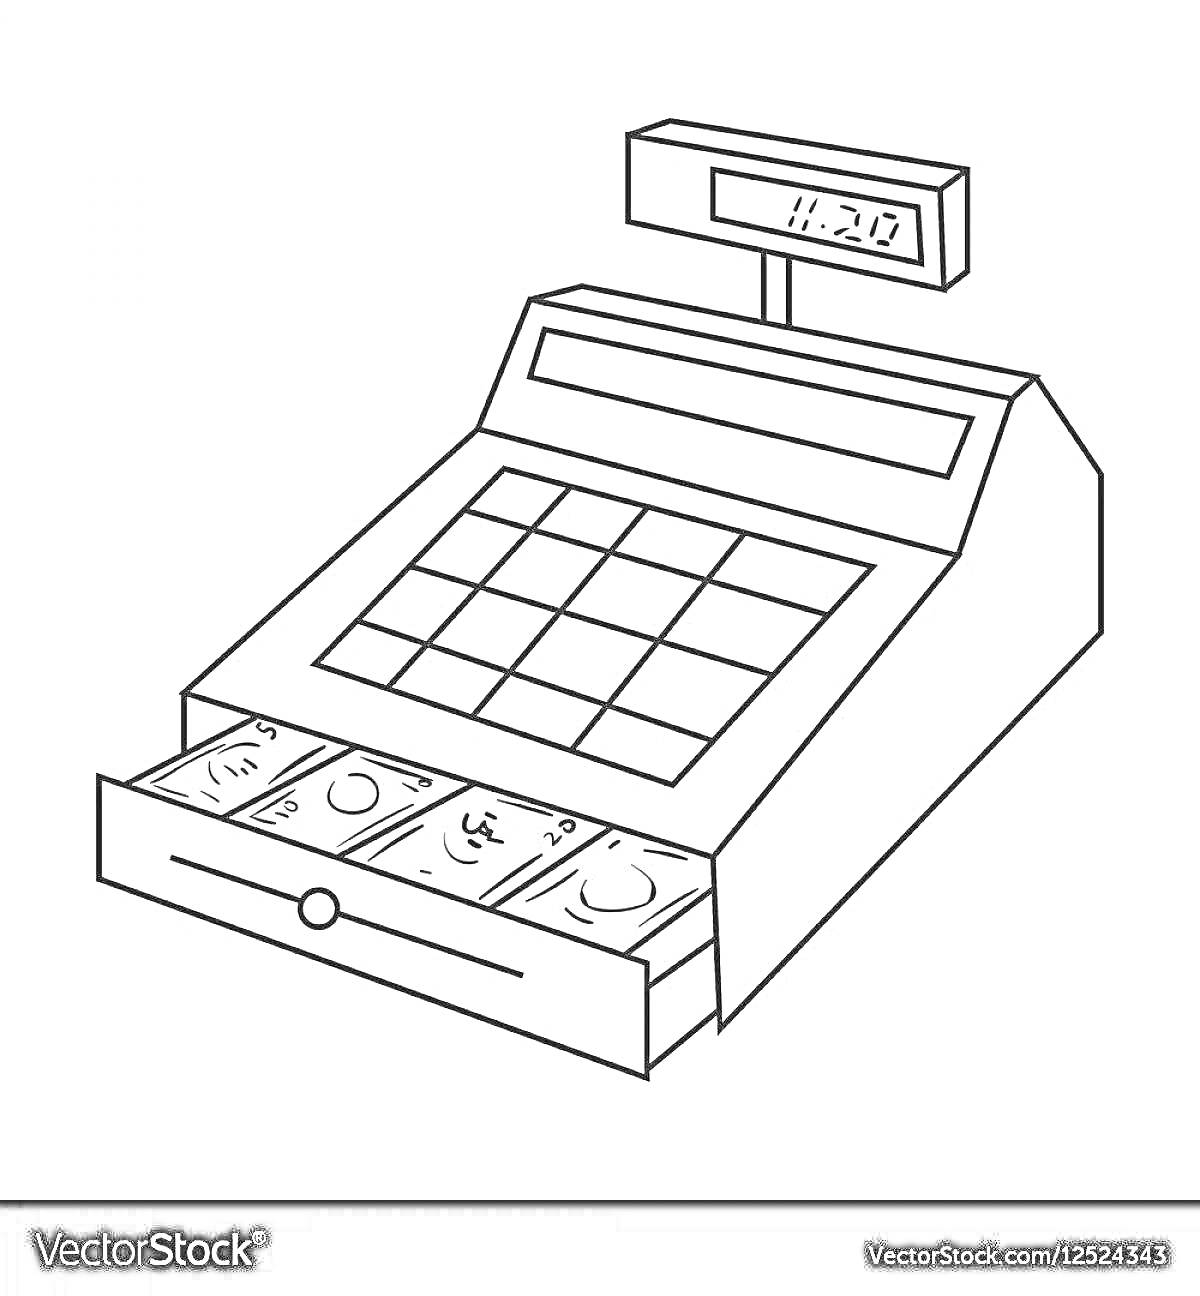 На раскраске изображено: Кассовый аппарат, Деньги, Купюры, Цифровой дисплей, Магазин, Выдвижной ящик